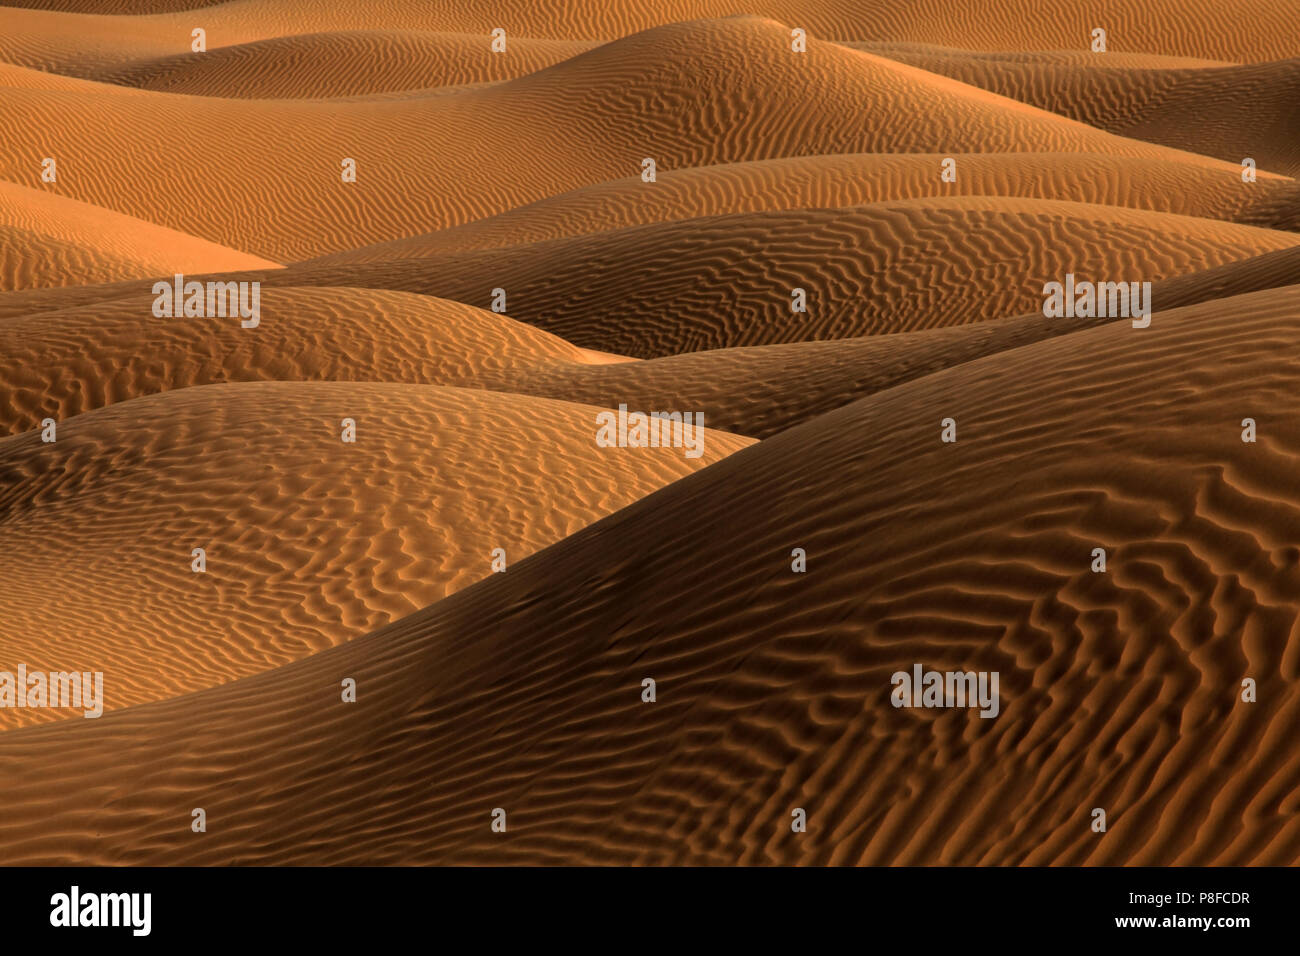 Le dune di sabbia del deserto, Arabia Saudita Foto Stock